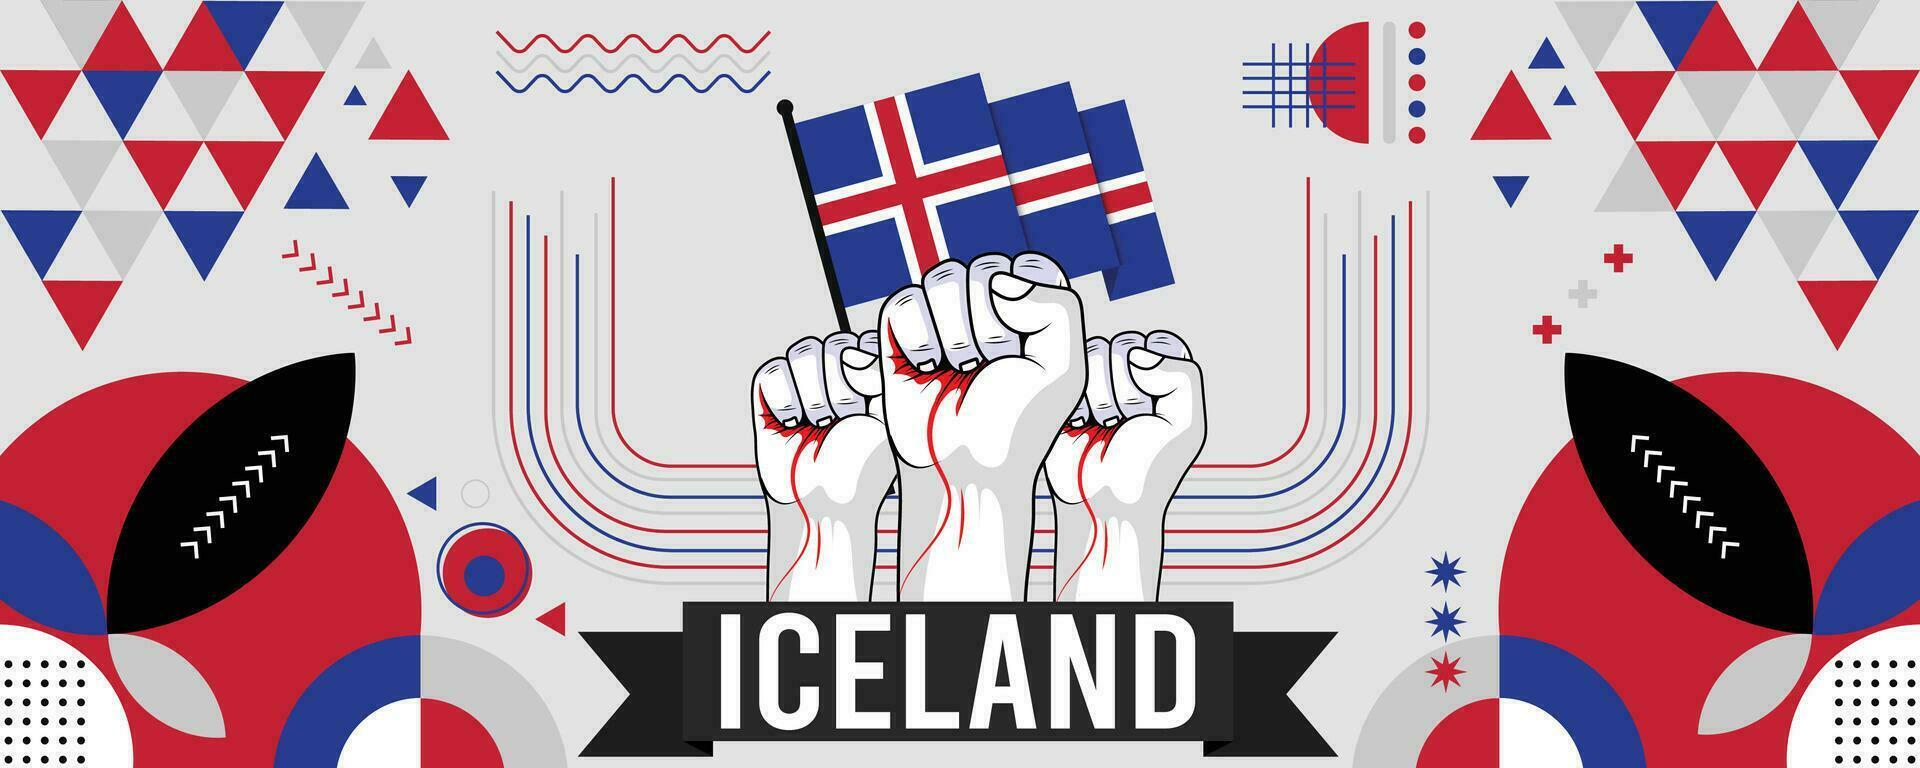 Islandia nacional o independencia día bandera para país celebracion. bandera de islandeses con elevado puños moderno retro diseño con tiporgafia resumen geométrico iconos vector ilustración.